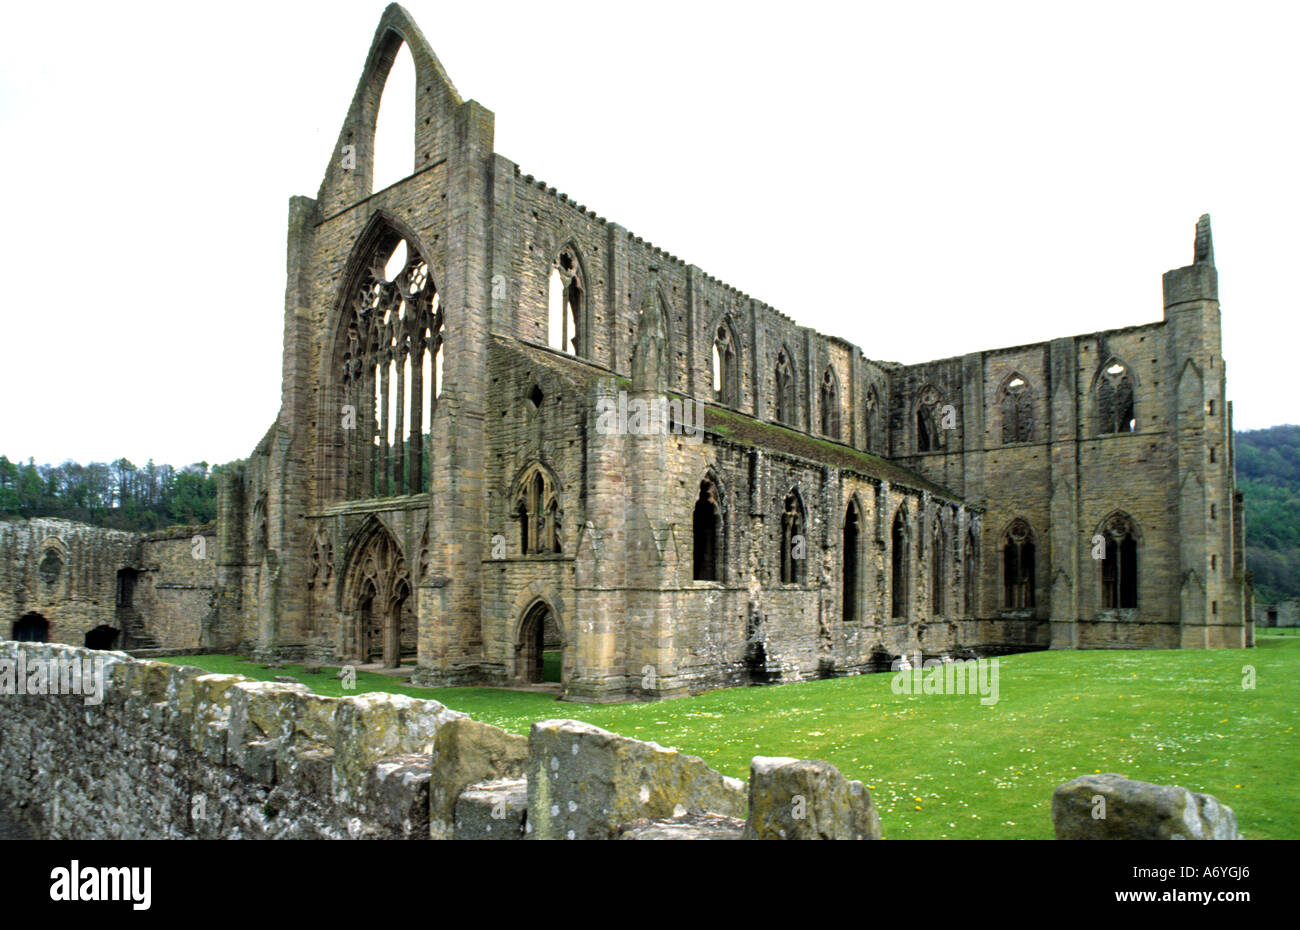 Tintern Abbey è stata fondata da Walter de Clare, signore di Chepstow, in data 9 maggio 1131. Situato sul fiume Wye in Monmouthshire Foto Stock